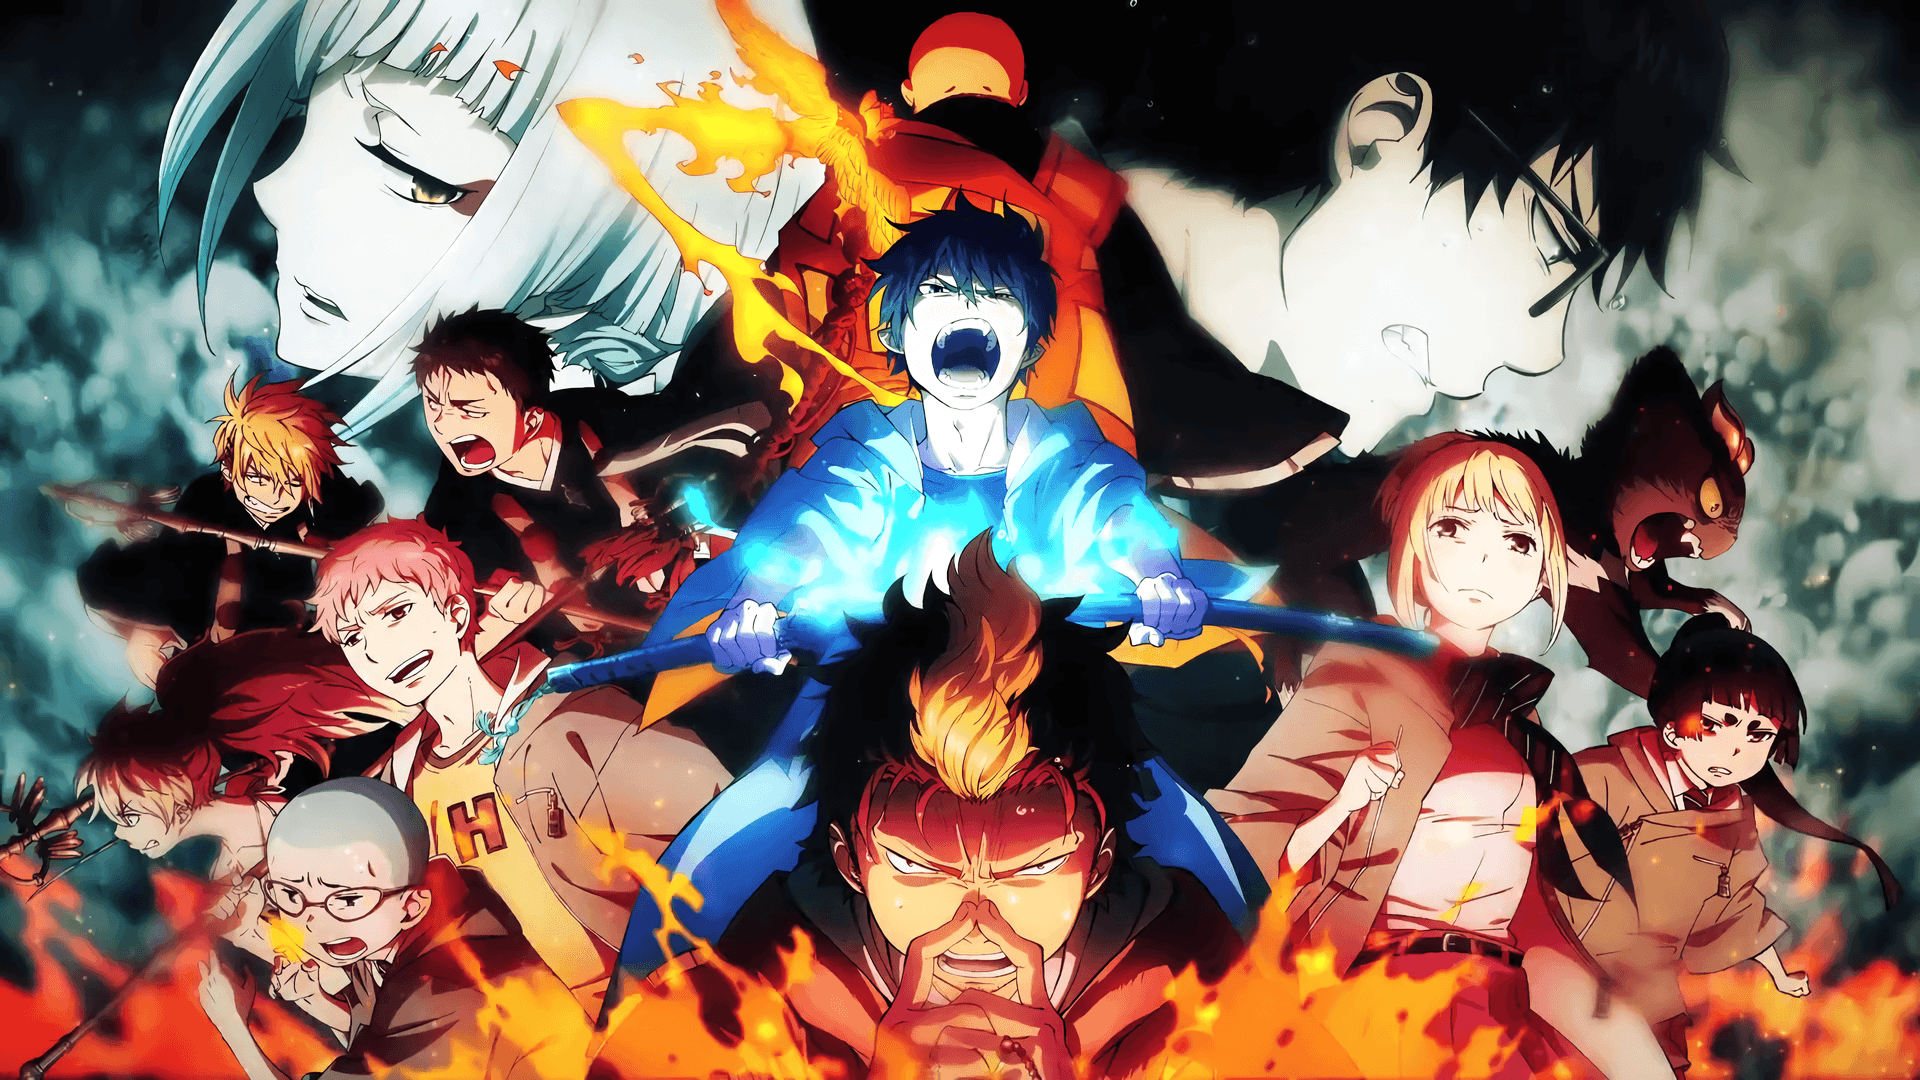 "rin Okumura Battling Demons In The Blue Exorcist Anime Series"